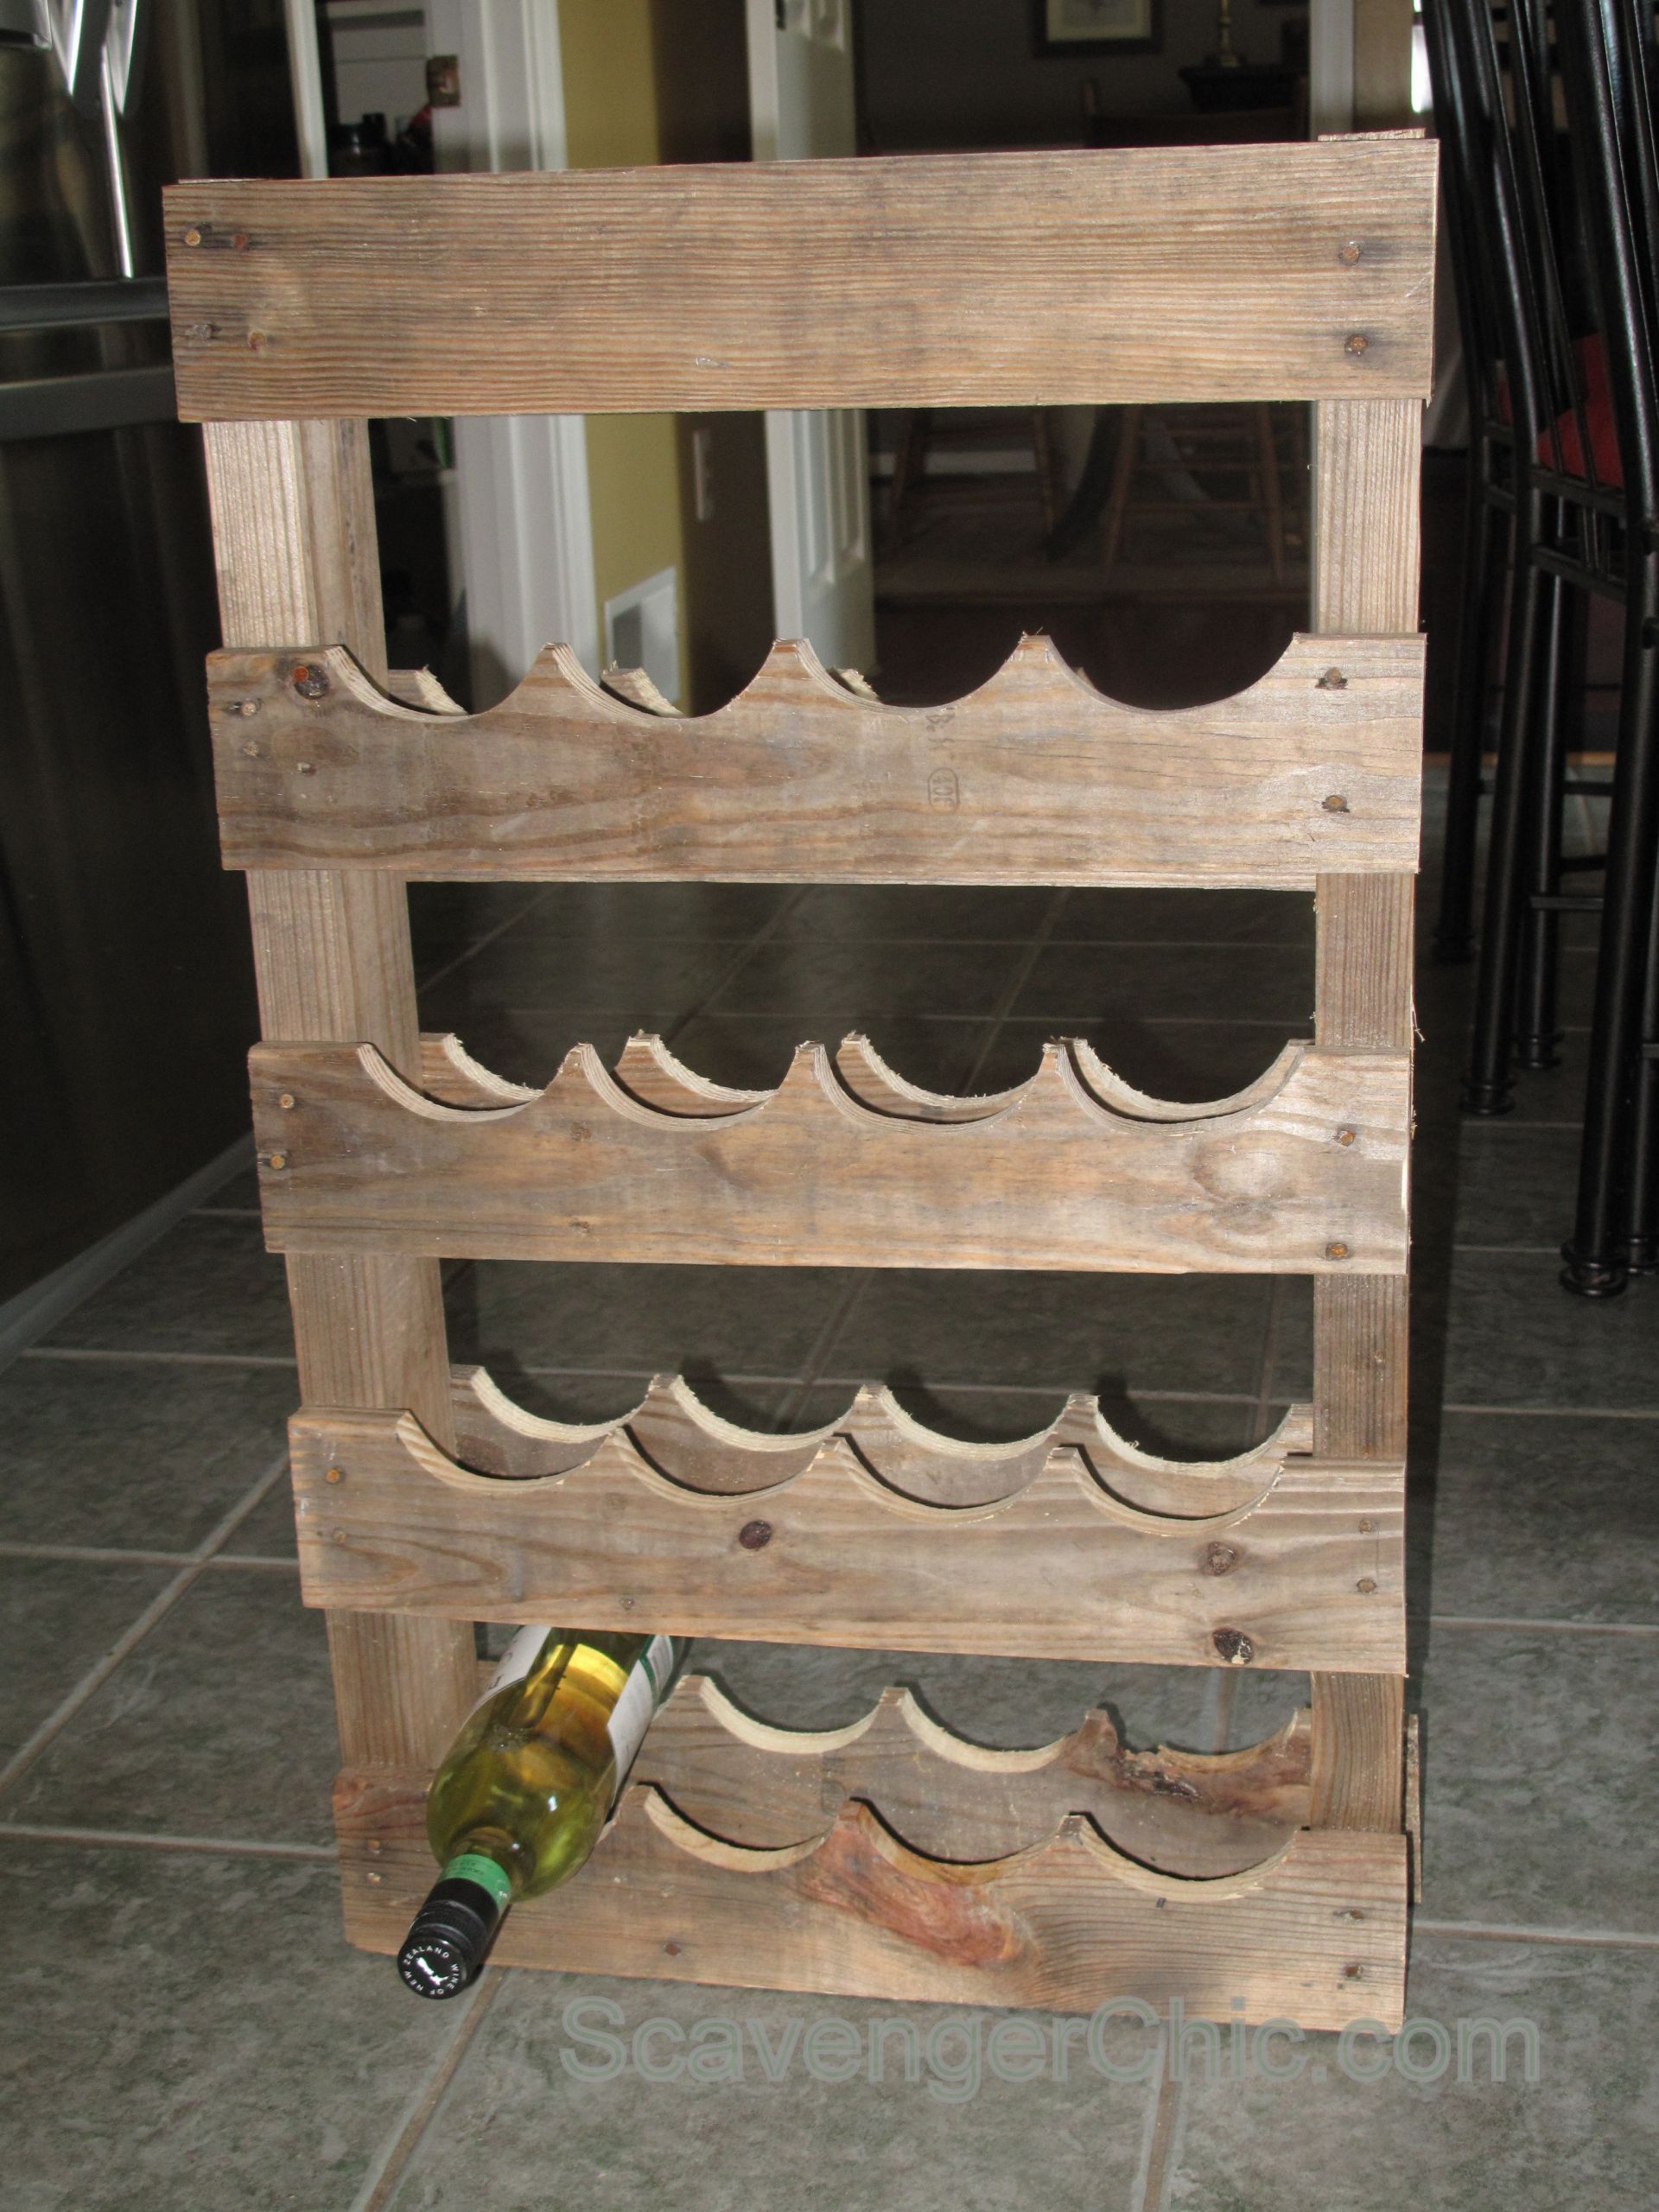 Reclaimed Wood Wine Rack DIY
 Pallet Wood Wine Rack DIY – Scavenger Chic